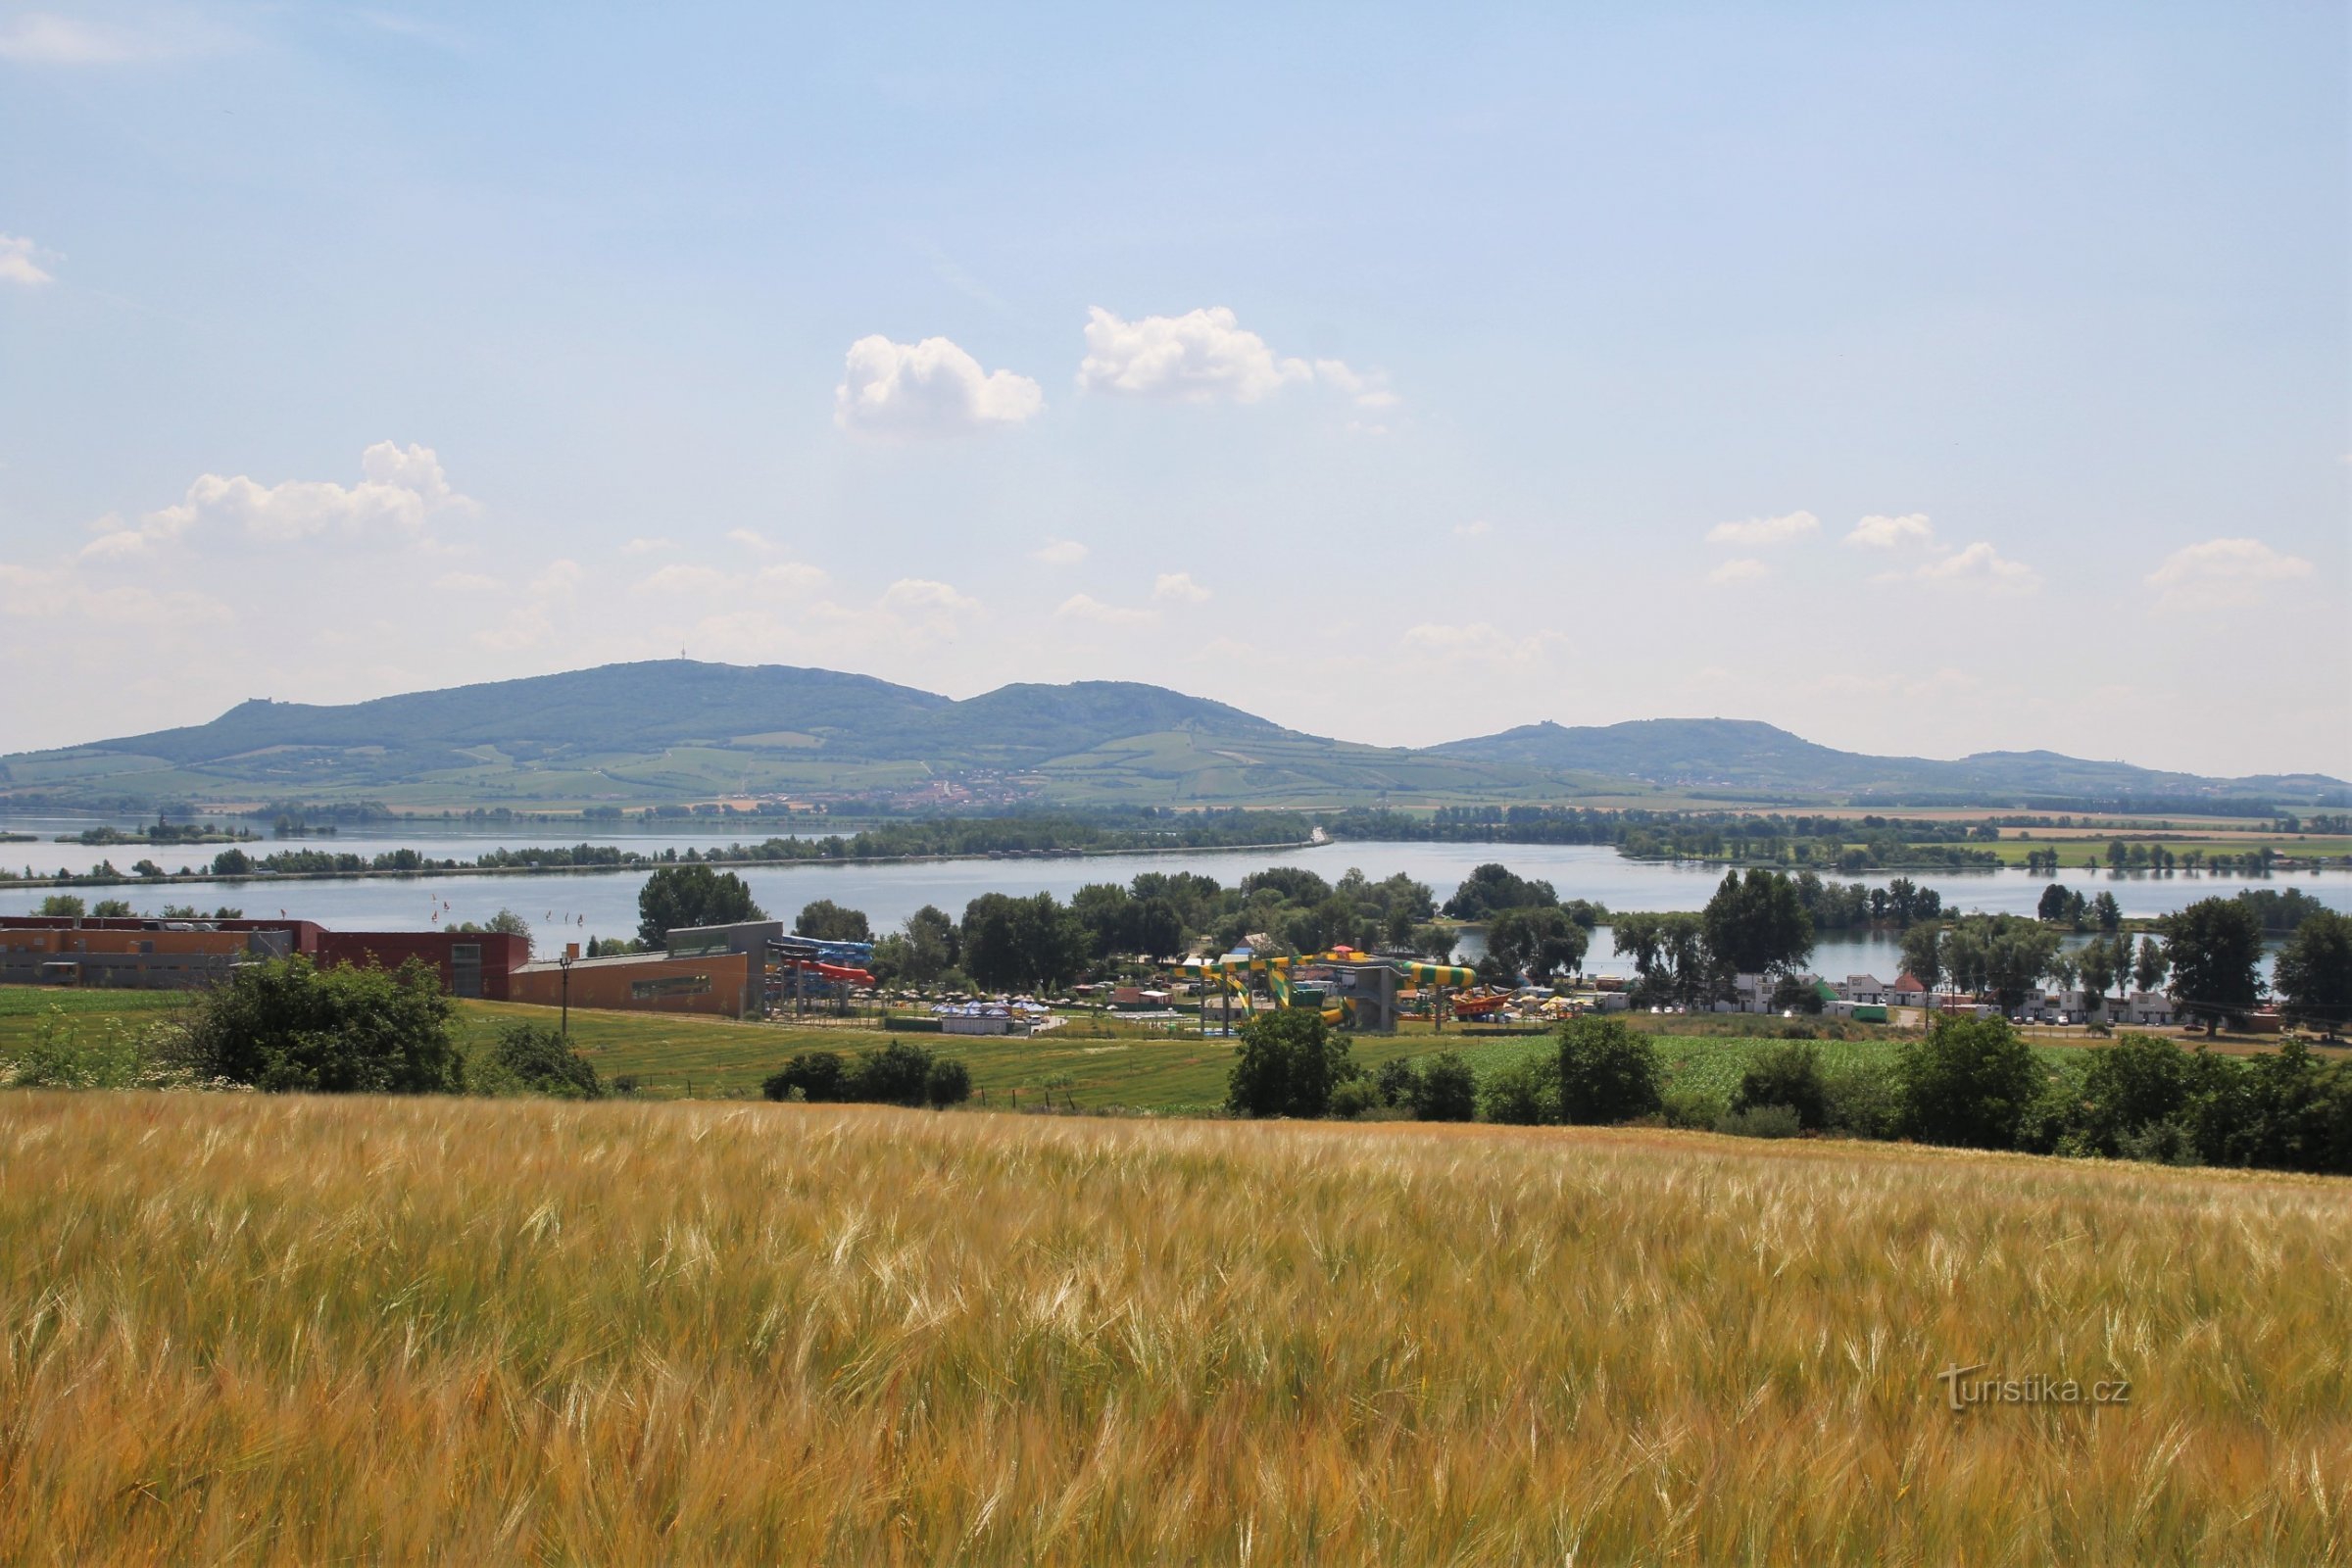 Utsikt över Aqualand Moravia och Pálavas ås